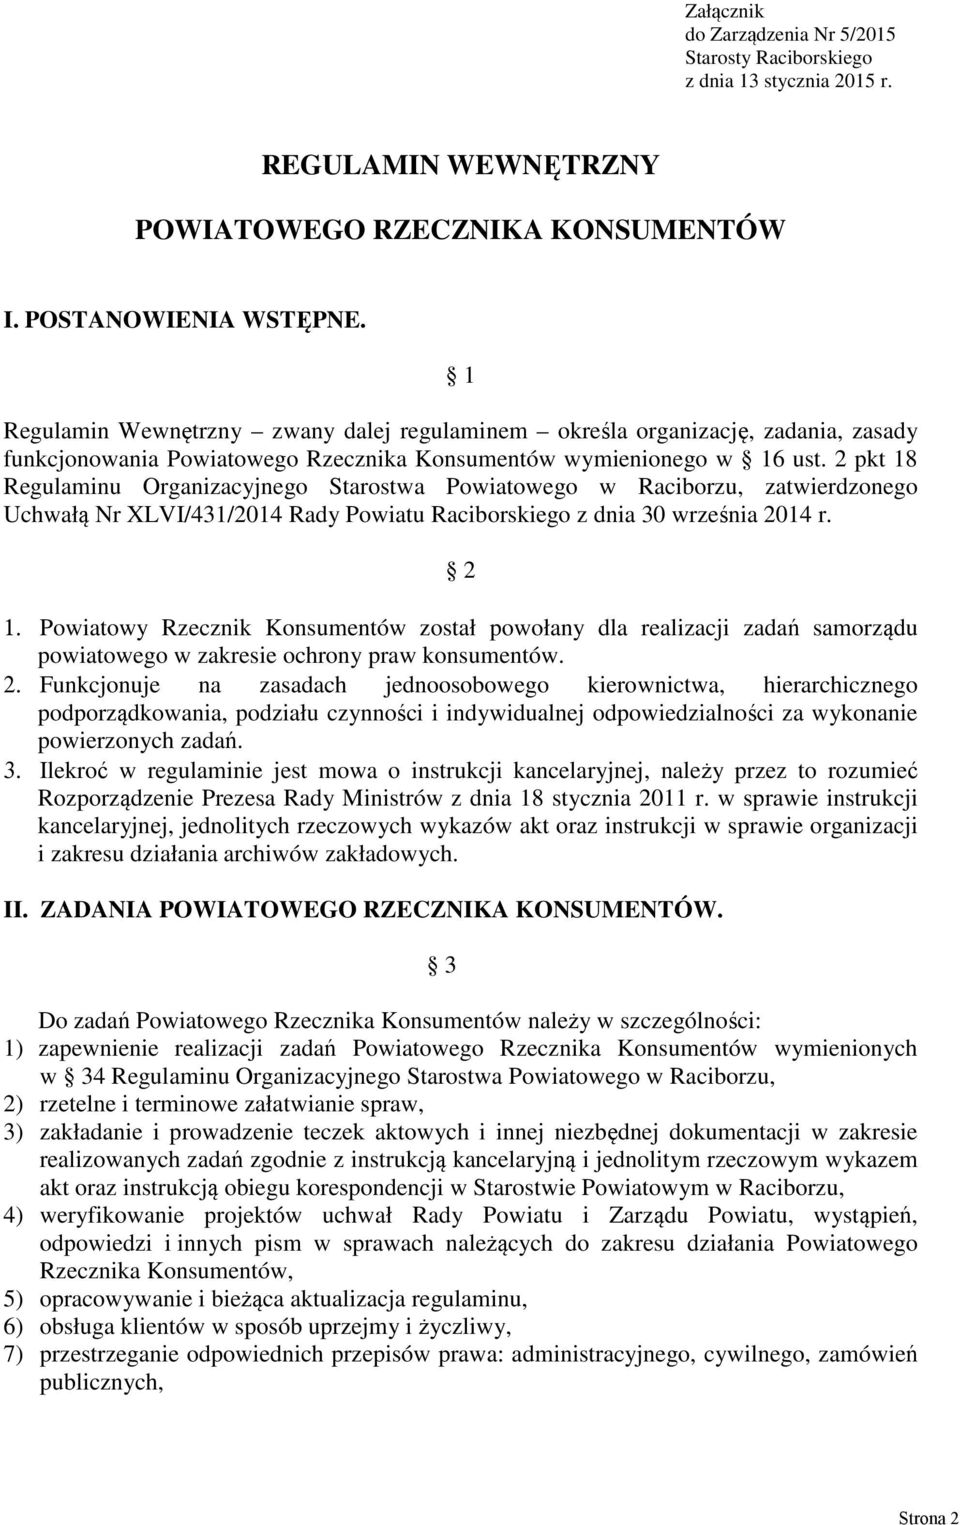 2 pkt 18 Regulaminu Organizacyjnego Starostwa Powiatowego w Raciborzu, zatwierdzonego Uchwałą Nr XLVI/431/2014 Rady Powiatu Raciborskiego z dnia 30 września 2014 r. 2 1.